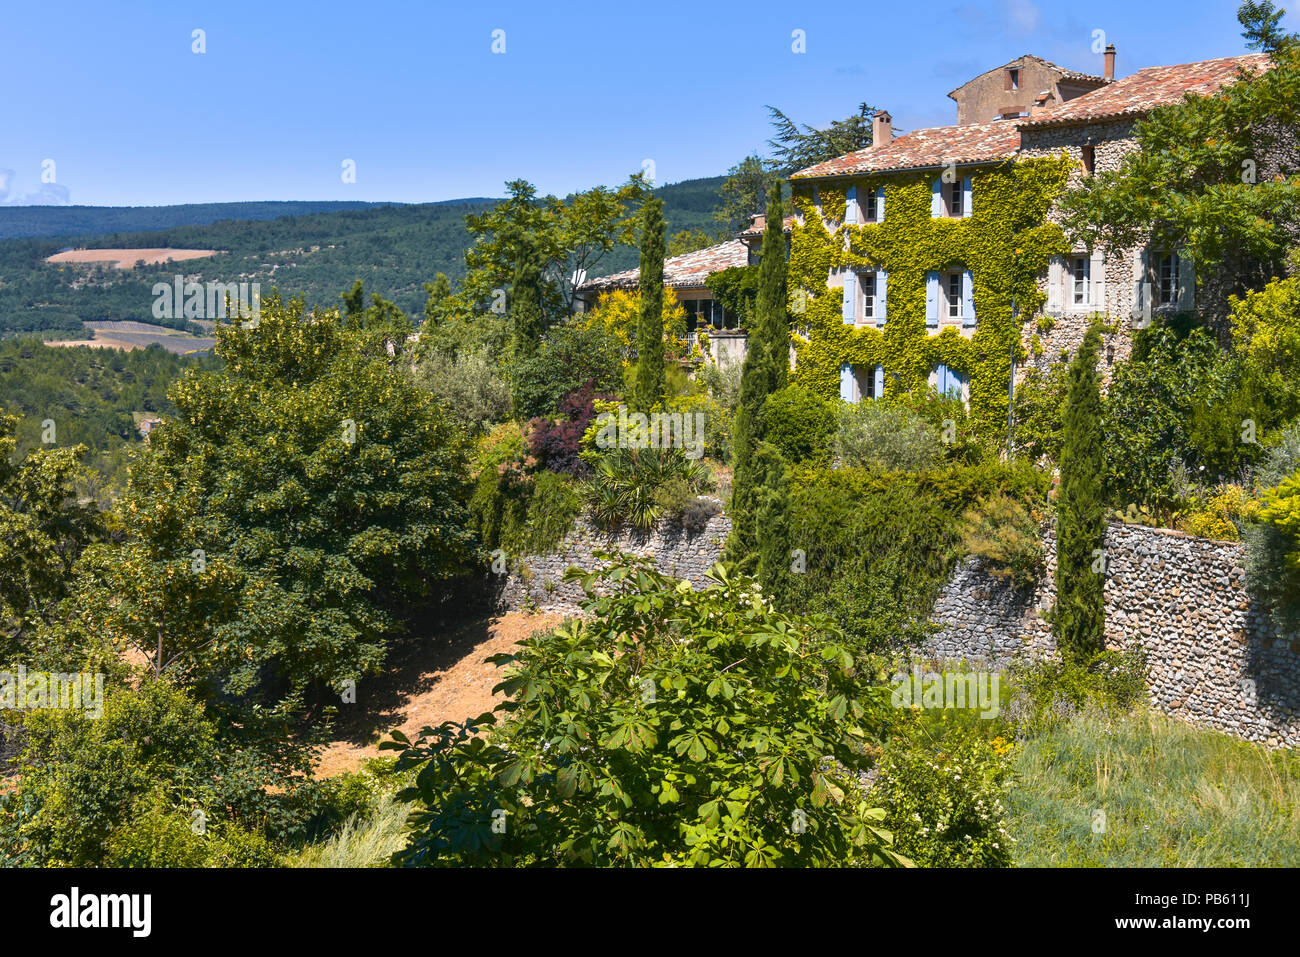 outer view of village Aurel, Provence, France, department Vaucluse, region Provence-Alpes-Côte d'Azur Stock Photo